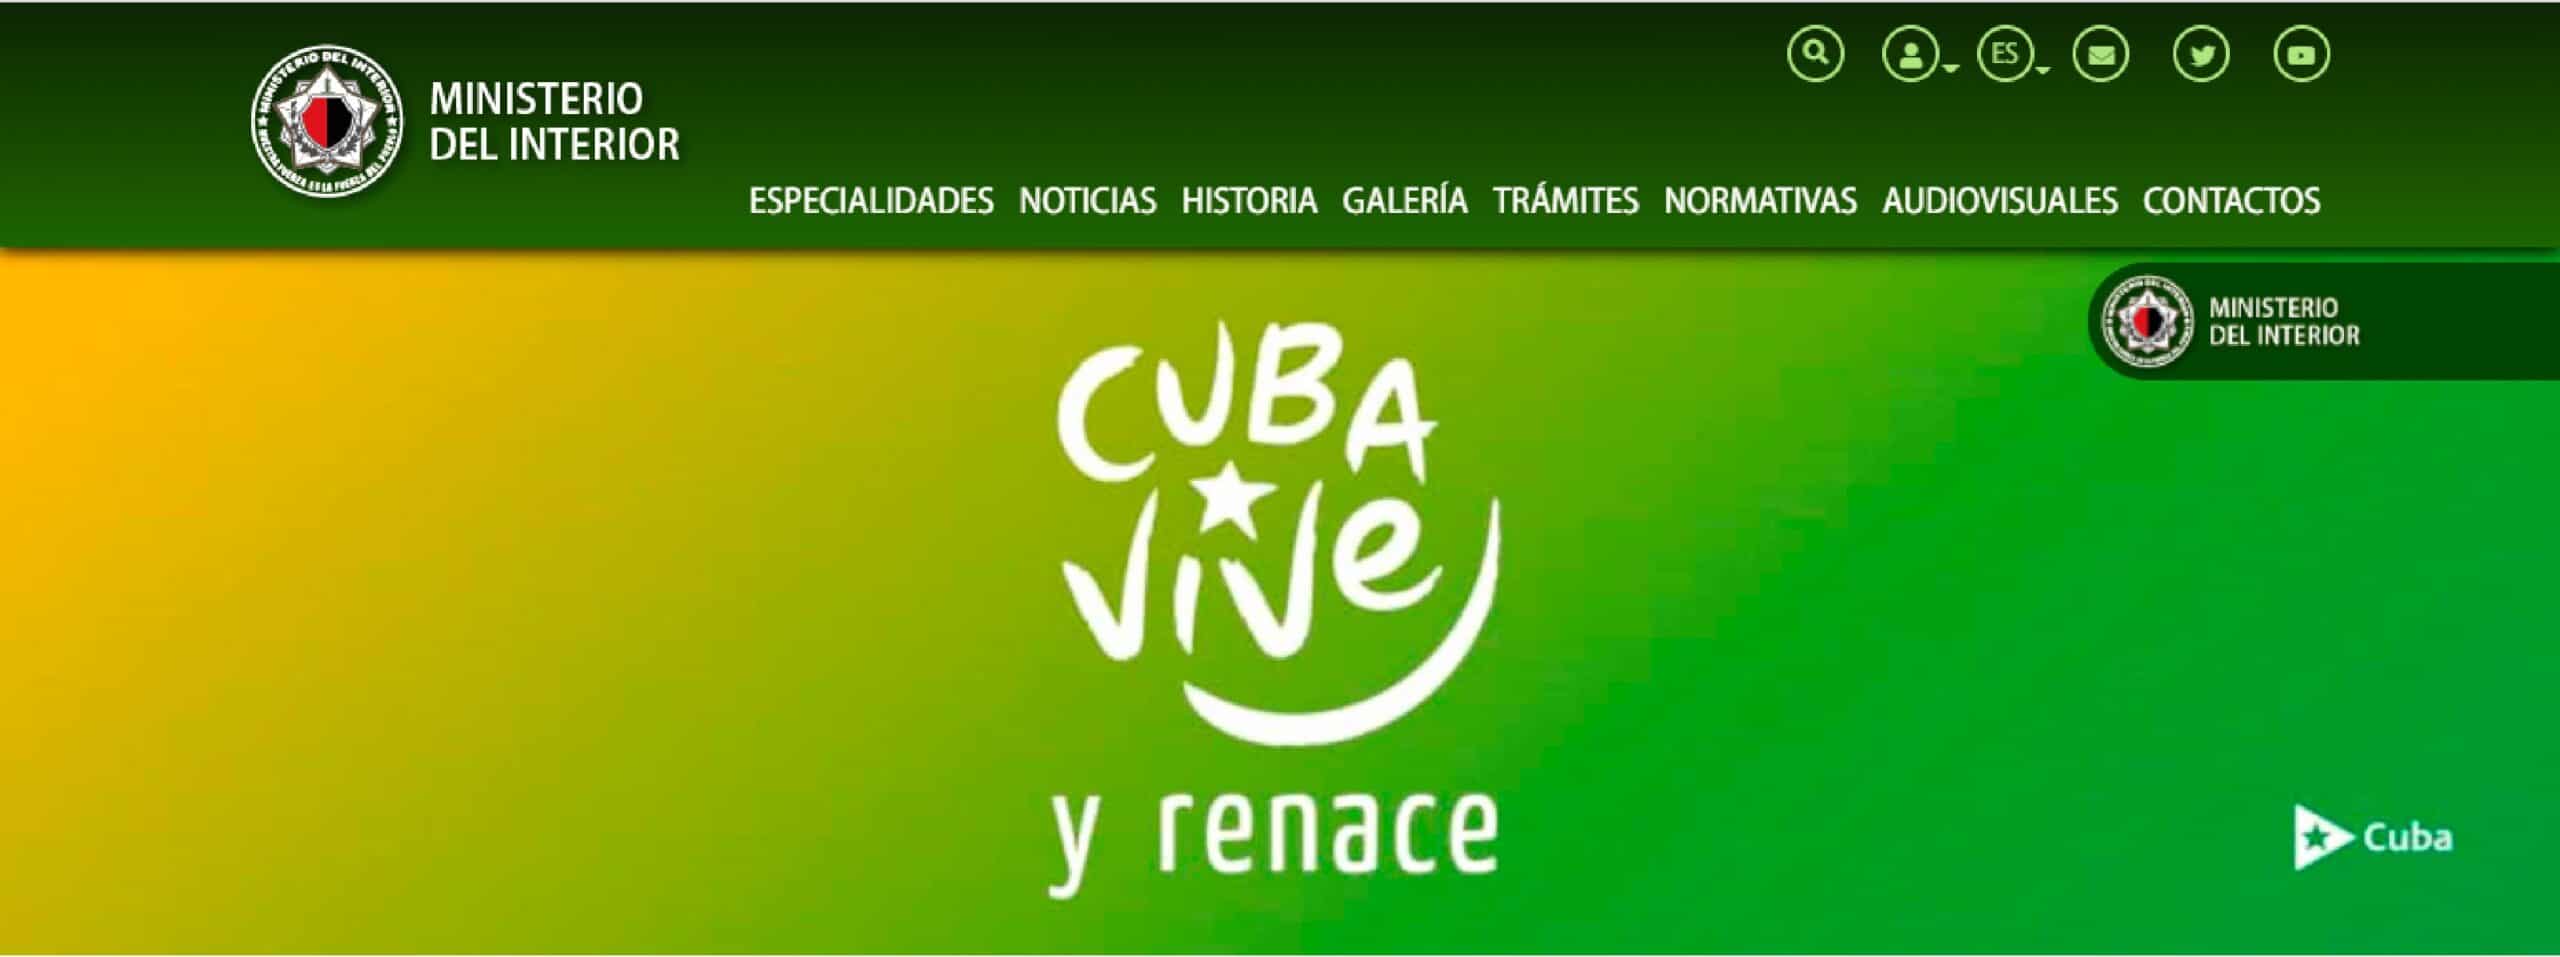 Nuevos Servicios Digitales del MININT para la Atención a la Ciudadanía en Cuba